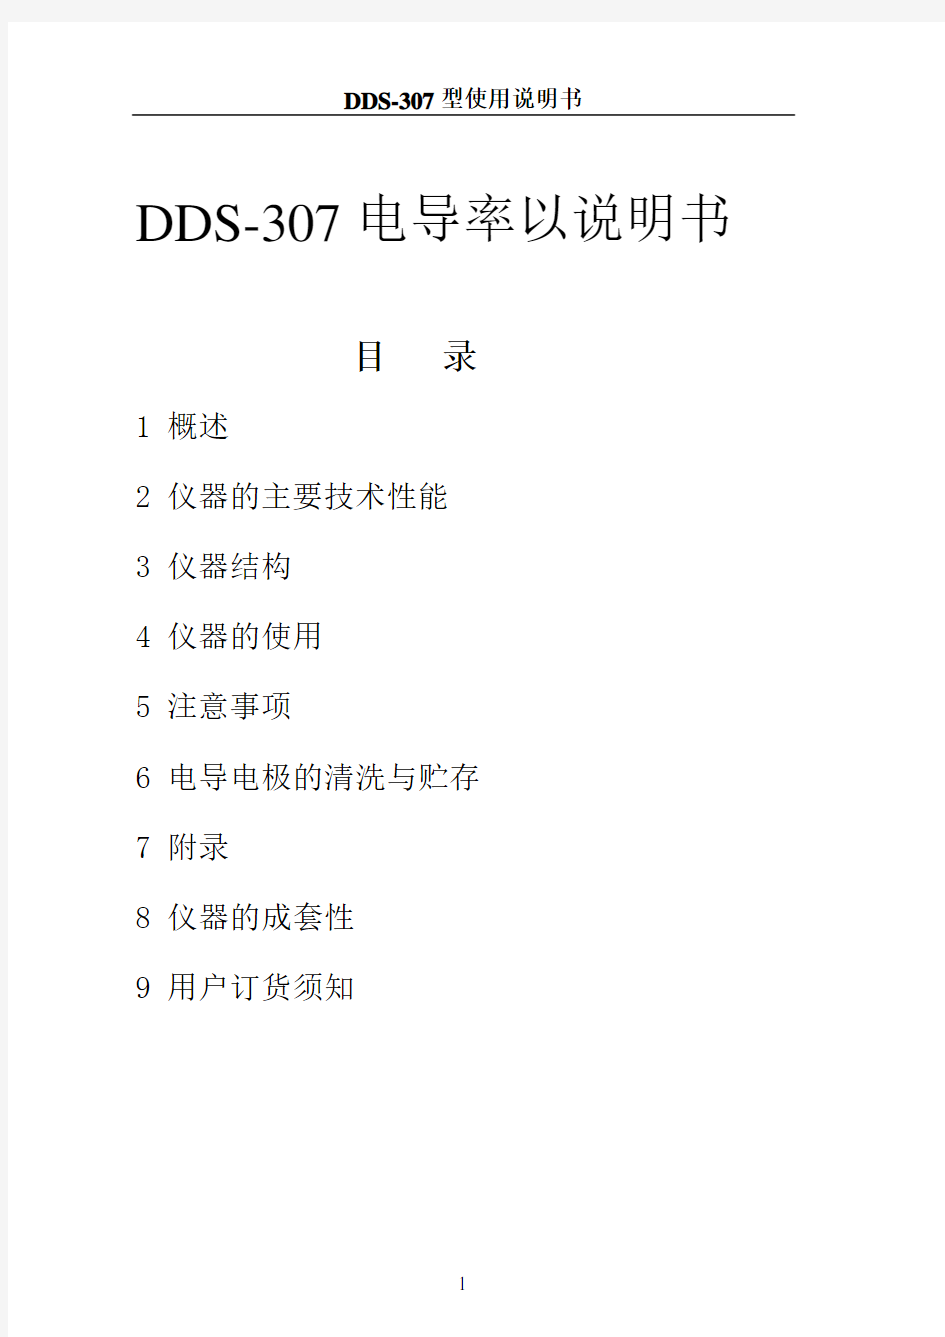 DDS-307电导率仪说明书